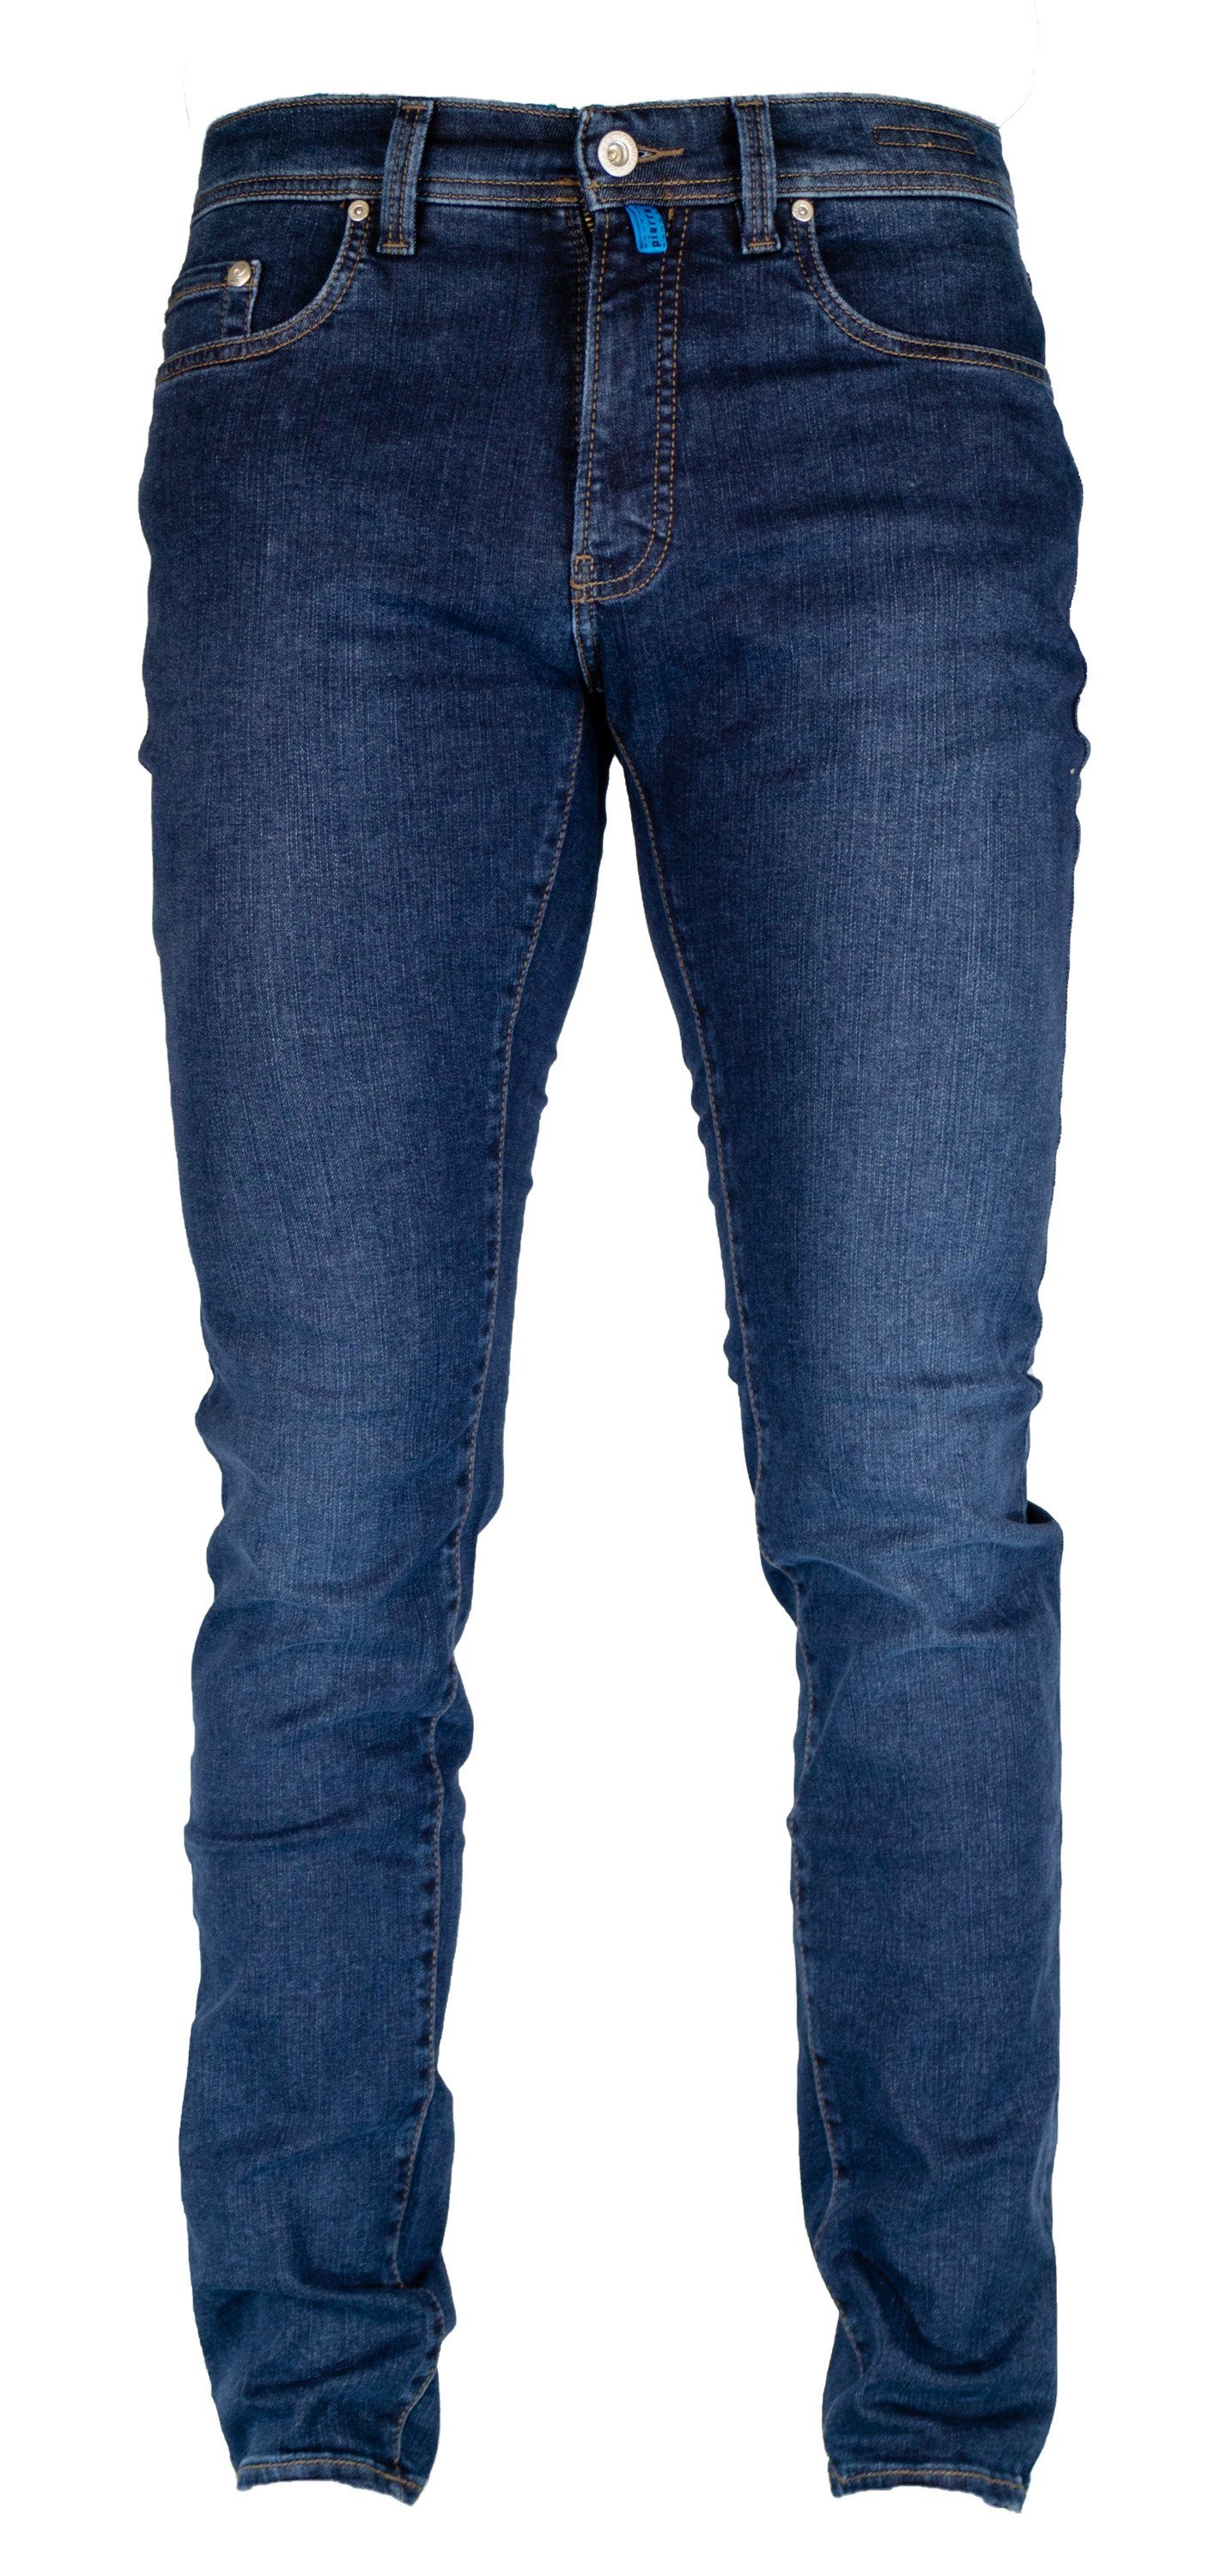 Pierre Cardin 5-Pocket-Jeans PIERRE CARDIN FUTUREFLEX LYON dark blue vintage used 3451 8880.73